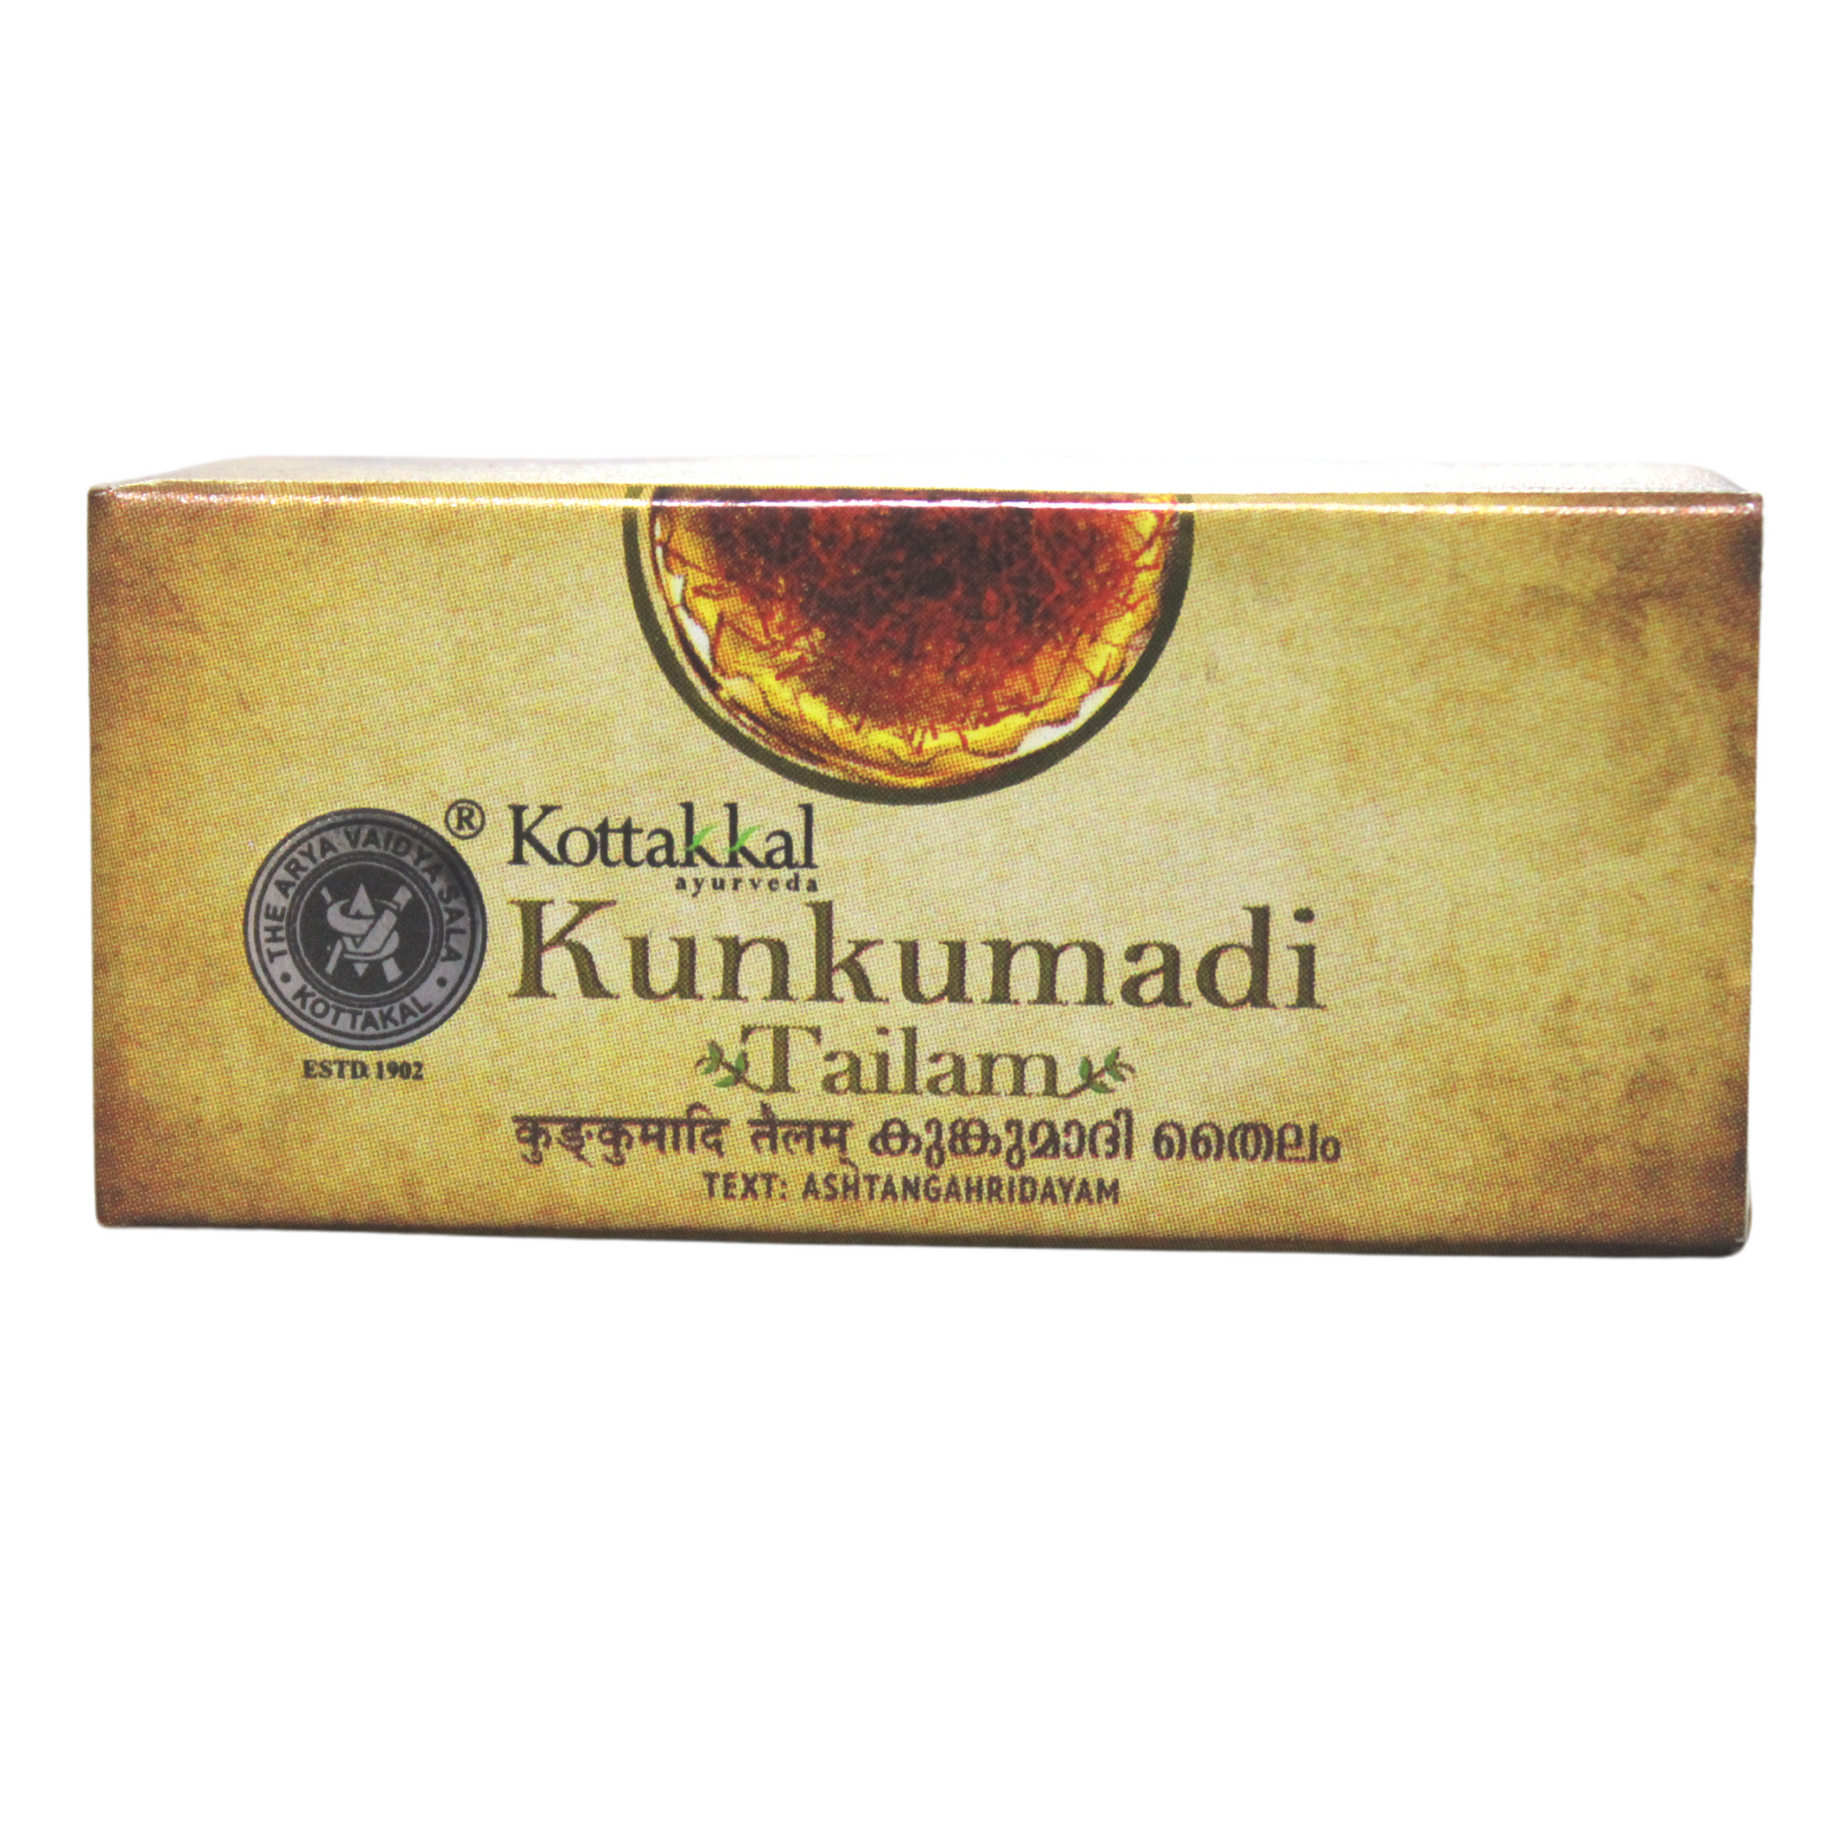 Shop Kottakkal Kunkumadi Tailam 10ml at price 455.00 from Kottakkal Online - Ayush Care